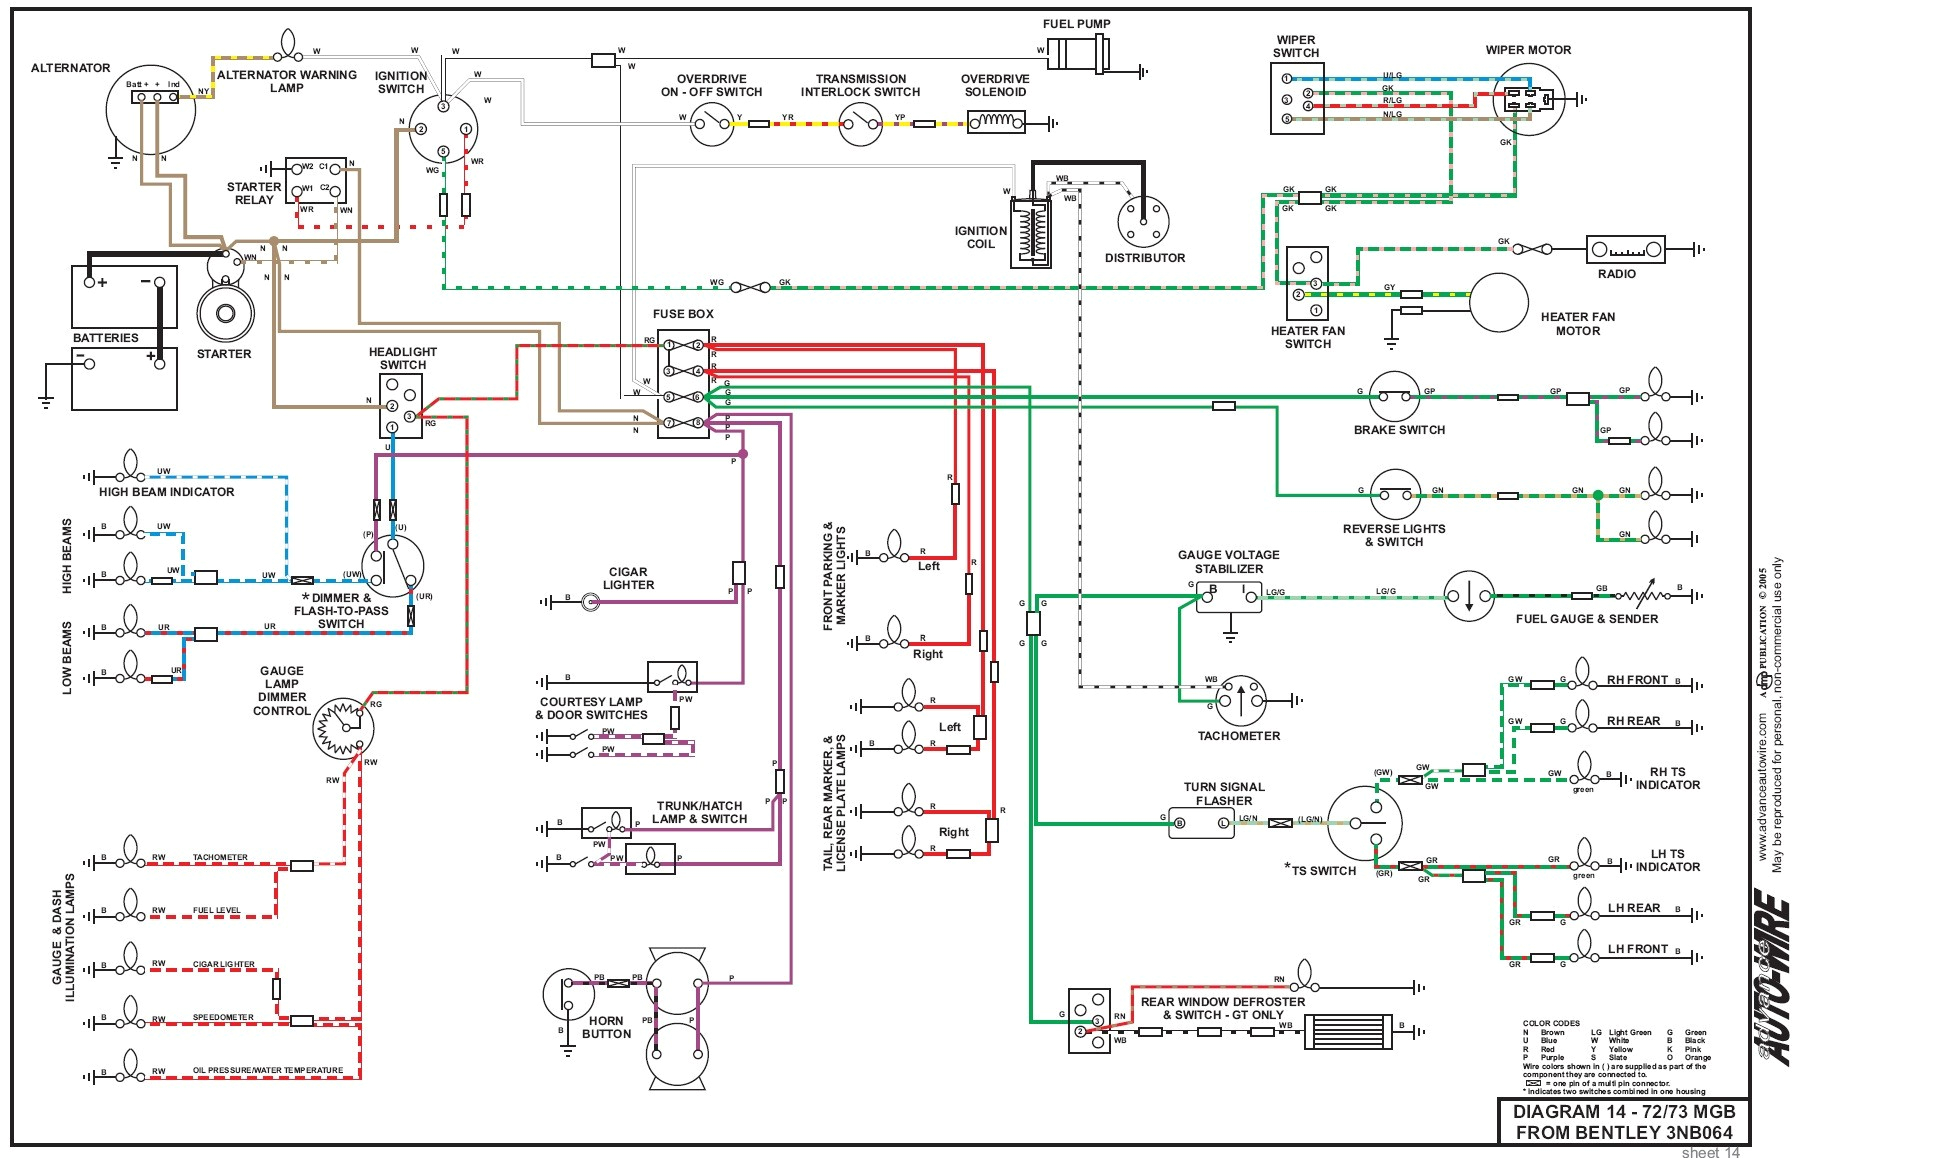 1980 mgb wiring schematic schema diagram database 1974 mgb wiring schematic